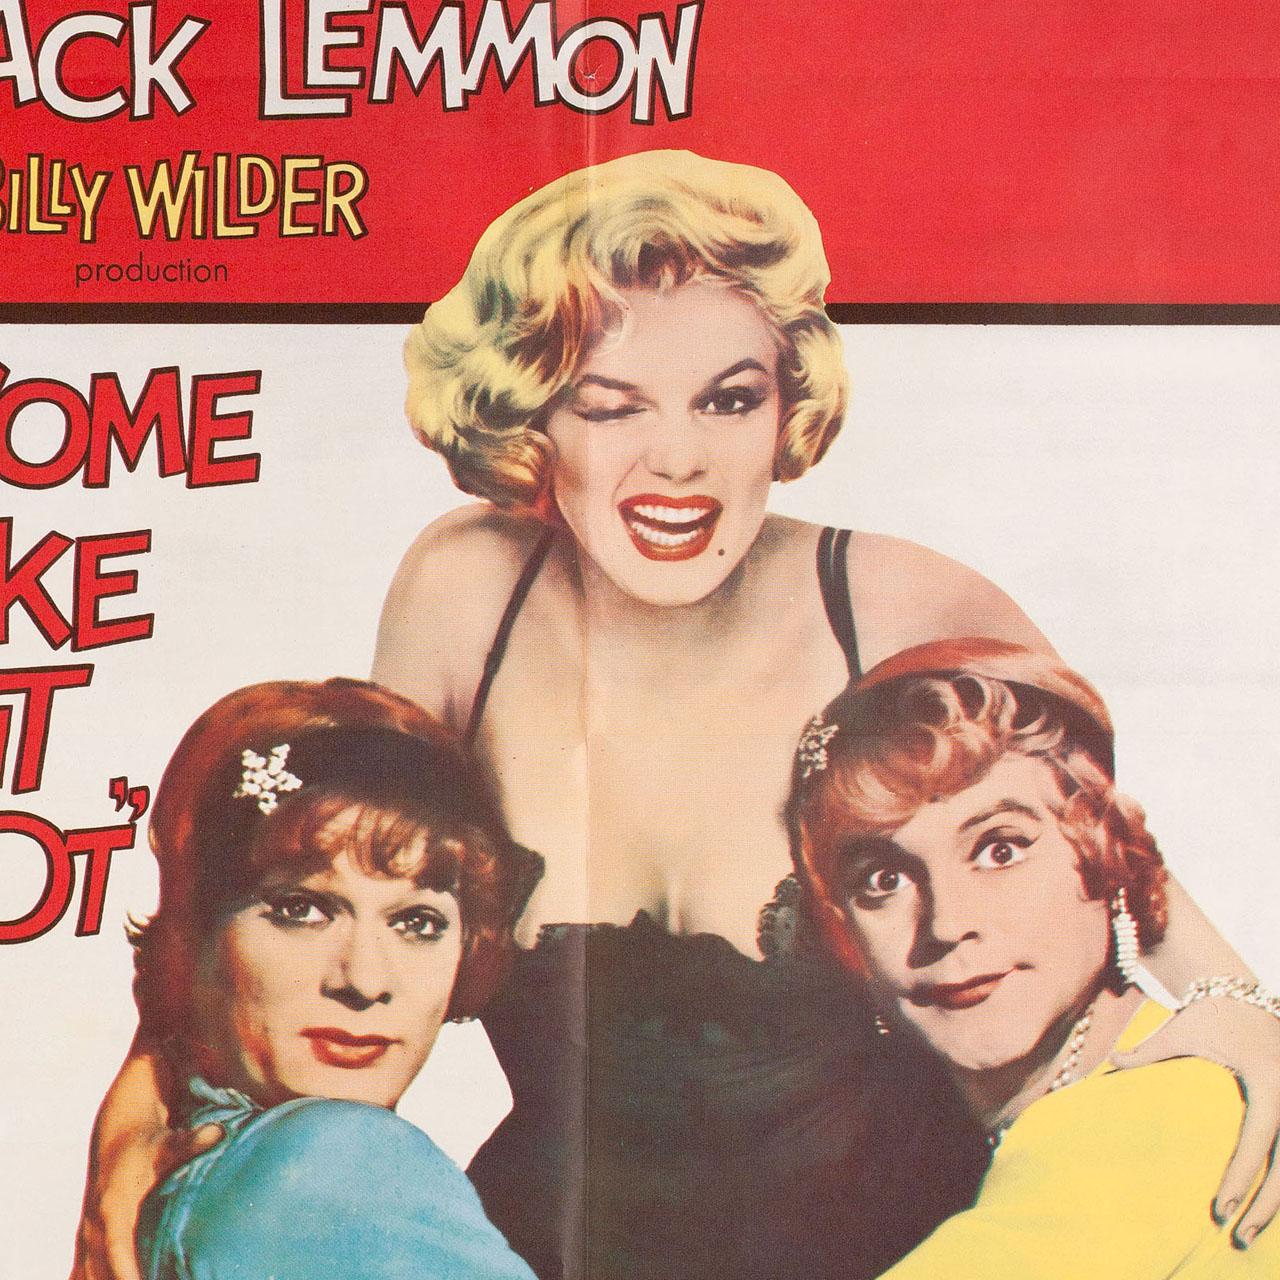 Originales US-Plakat von 1959 für den Film 